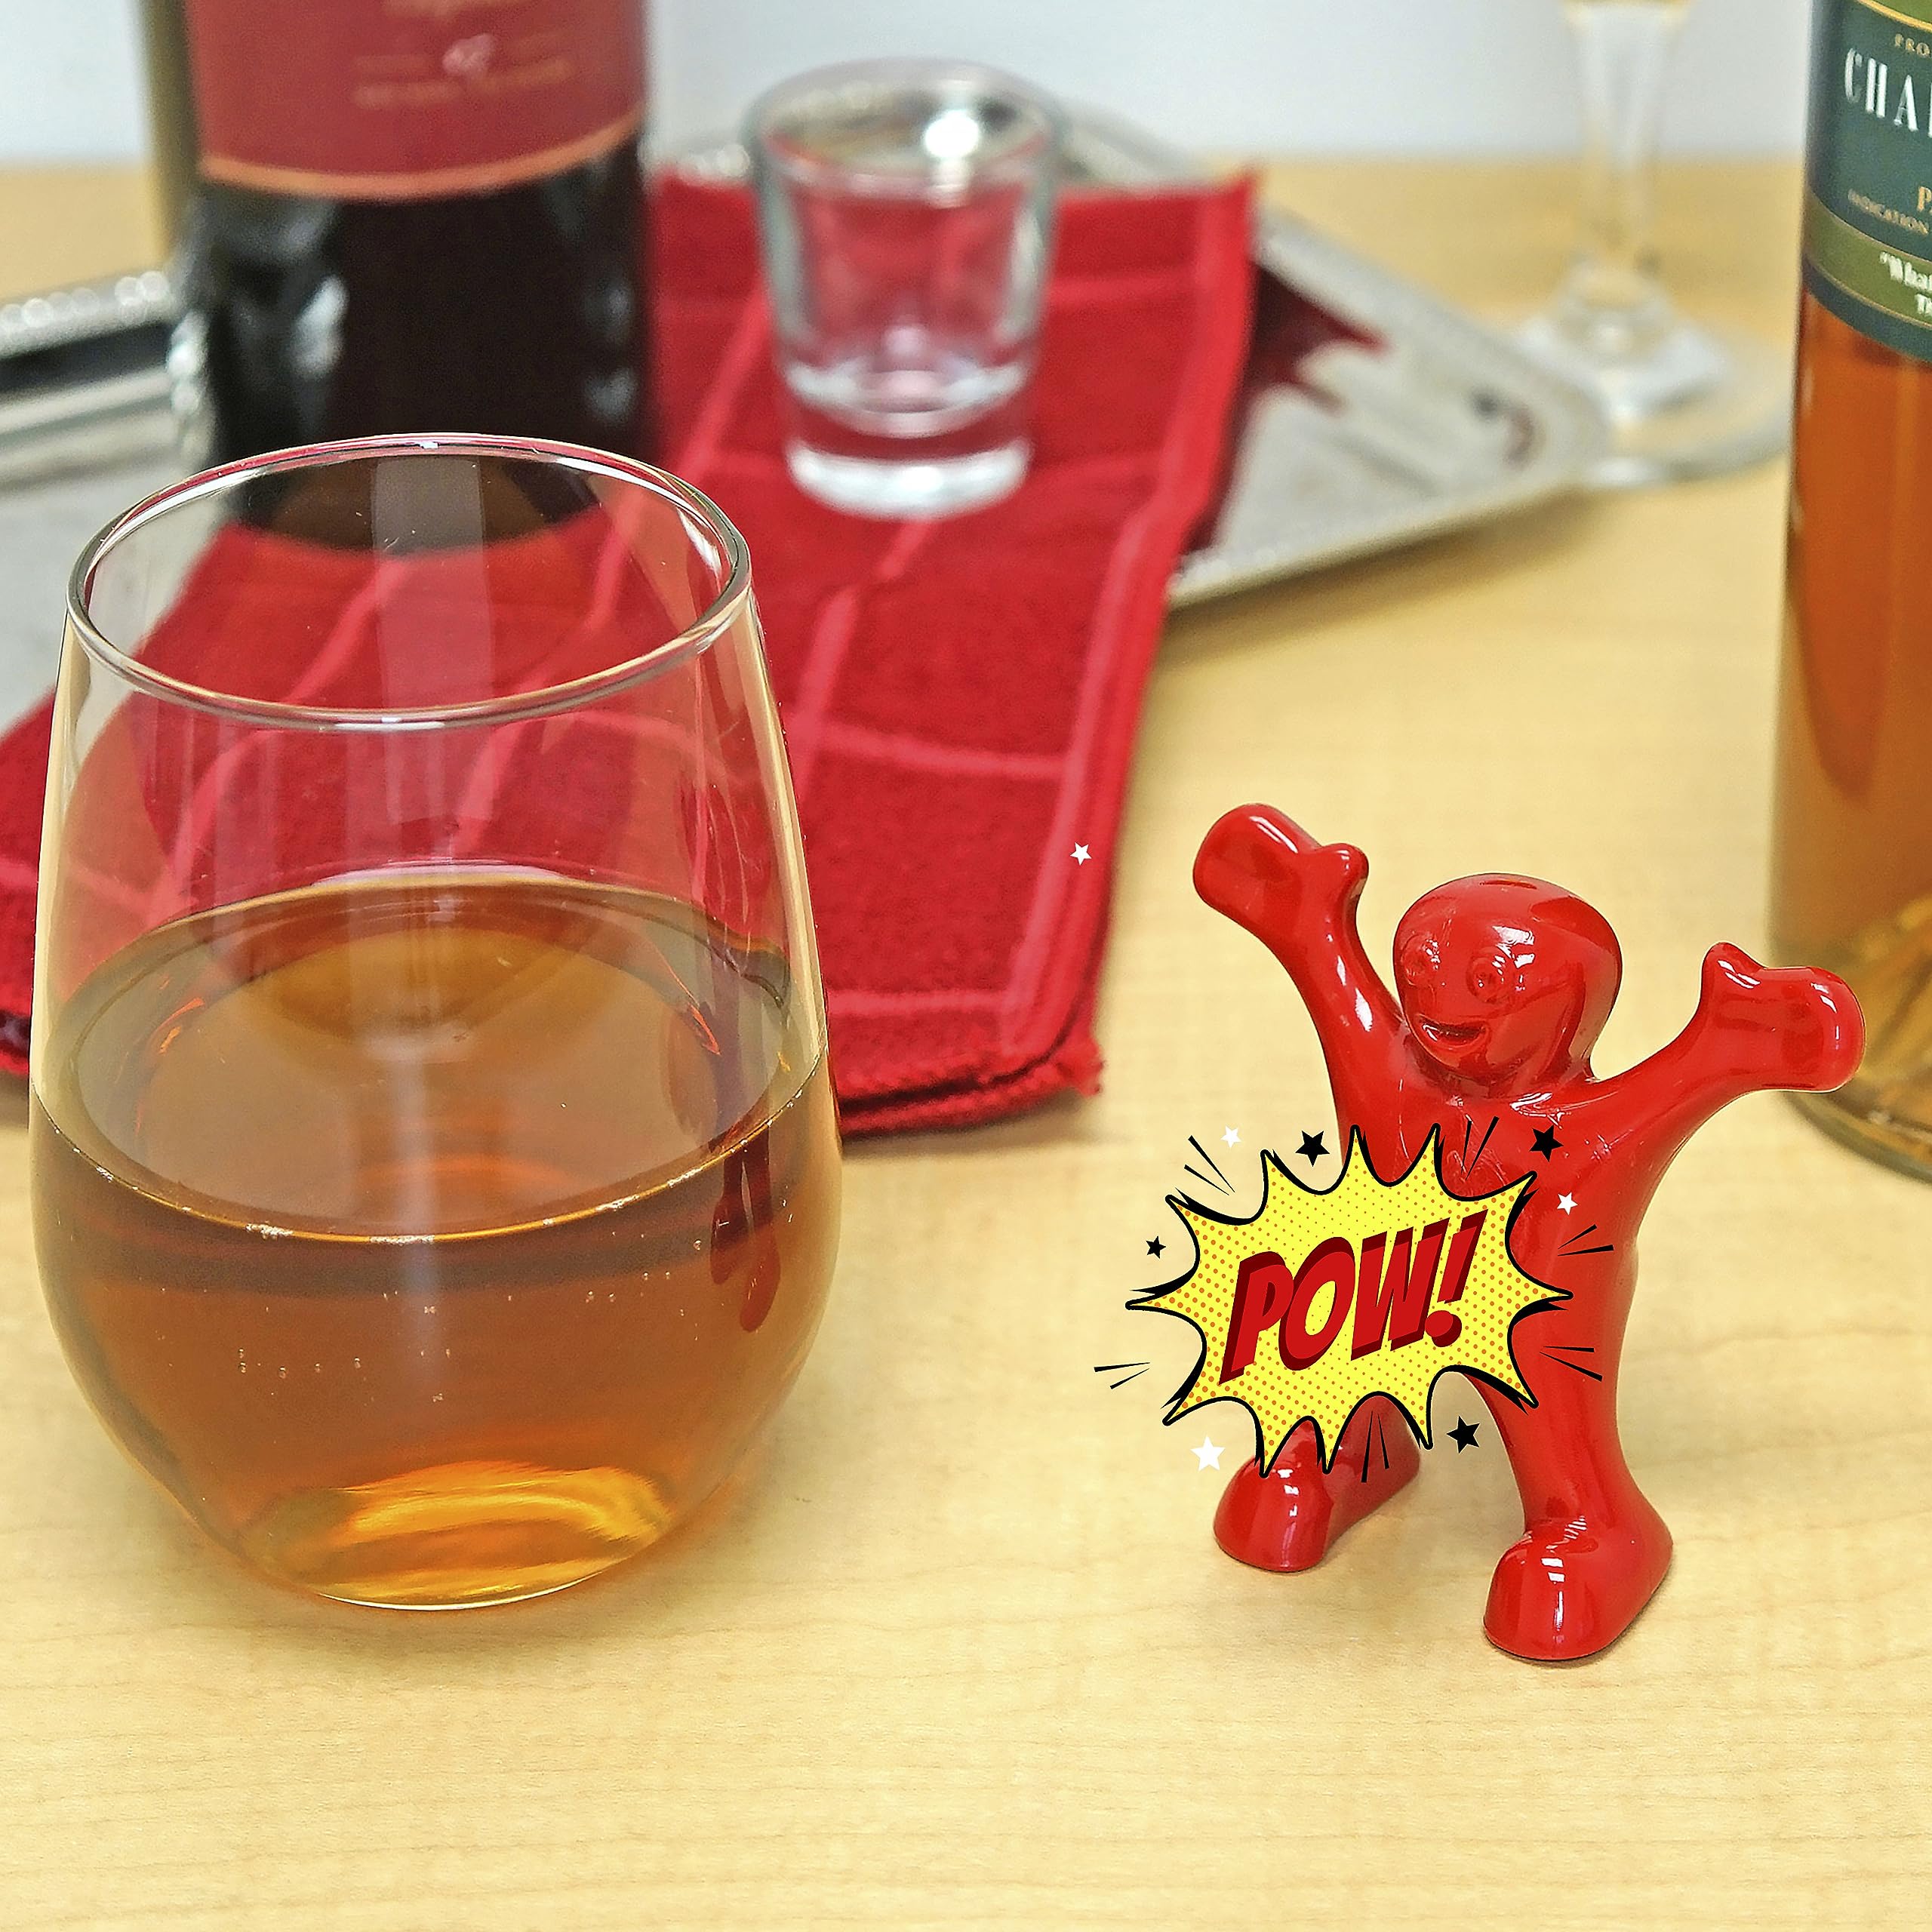 Fairly Odd Novelties FON-10194 Sir Perky Novelty Wine Pourer, One Size, Red